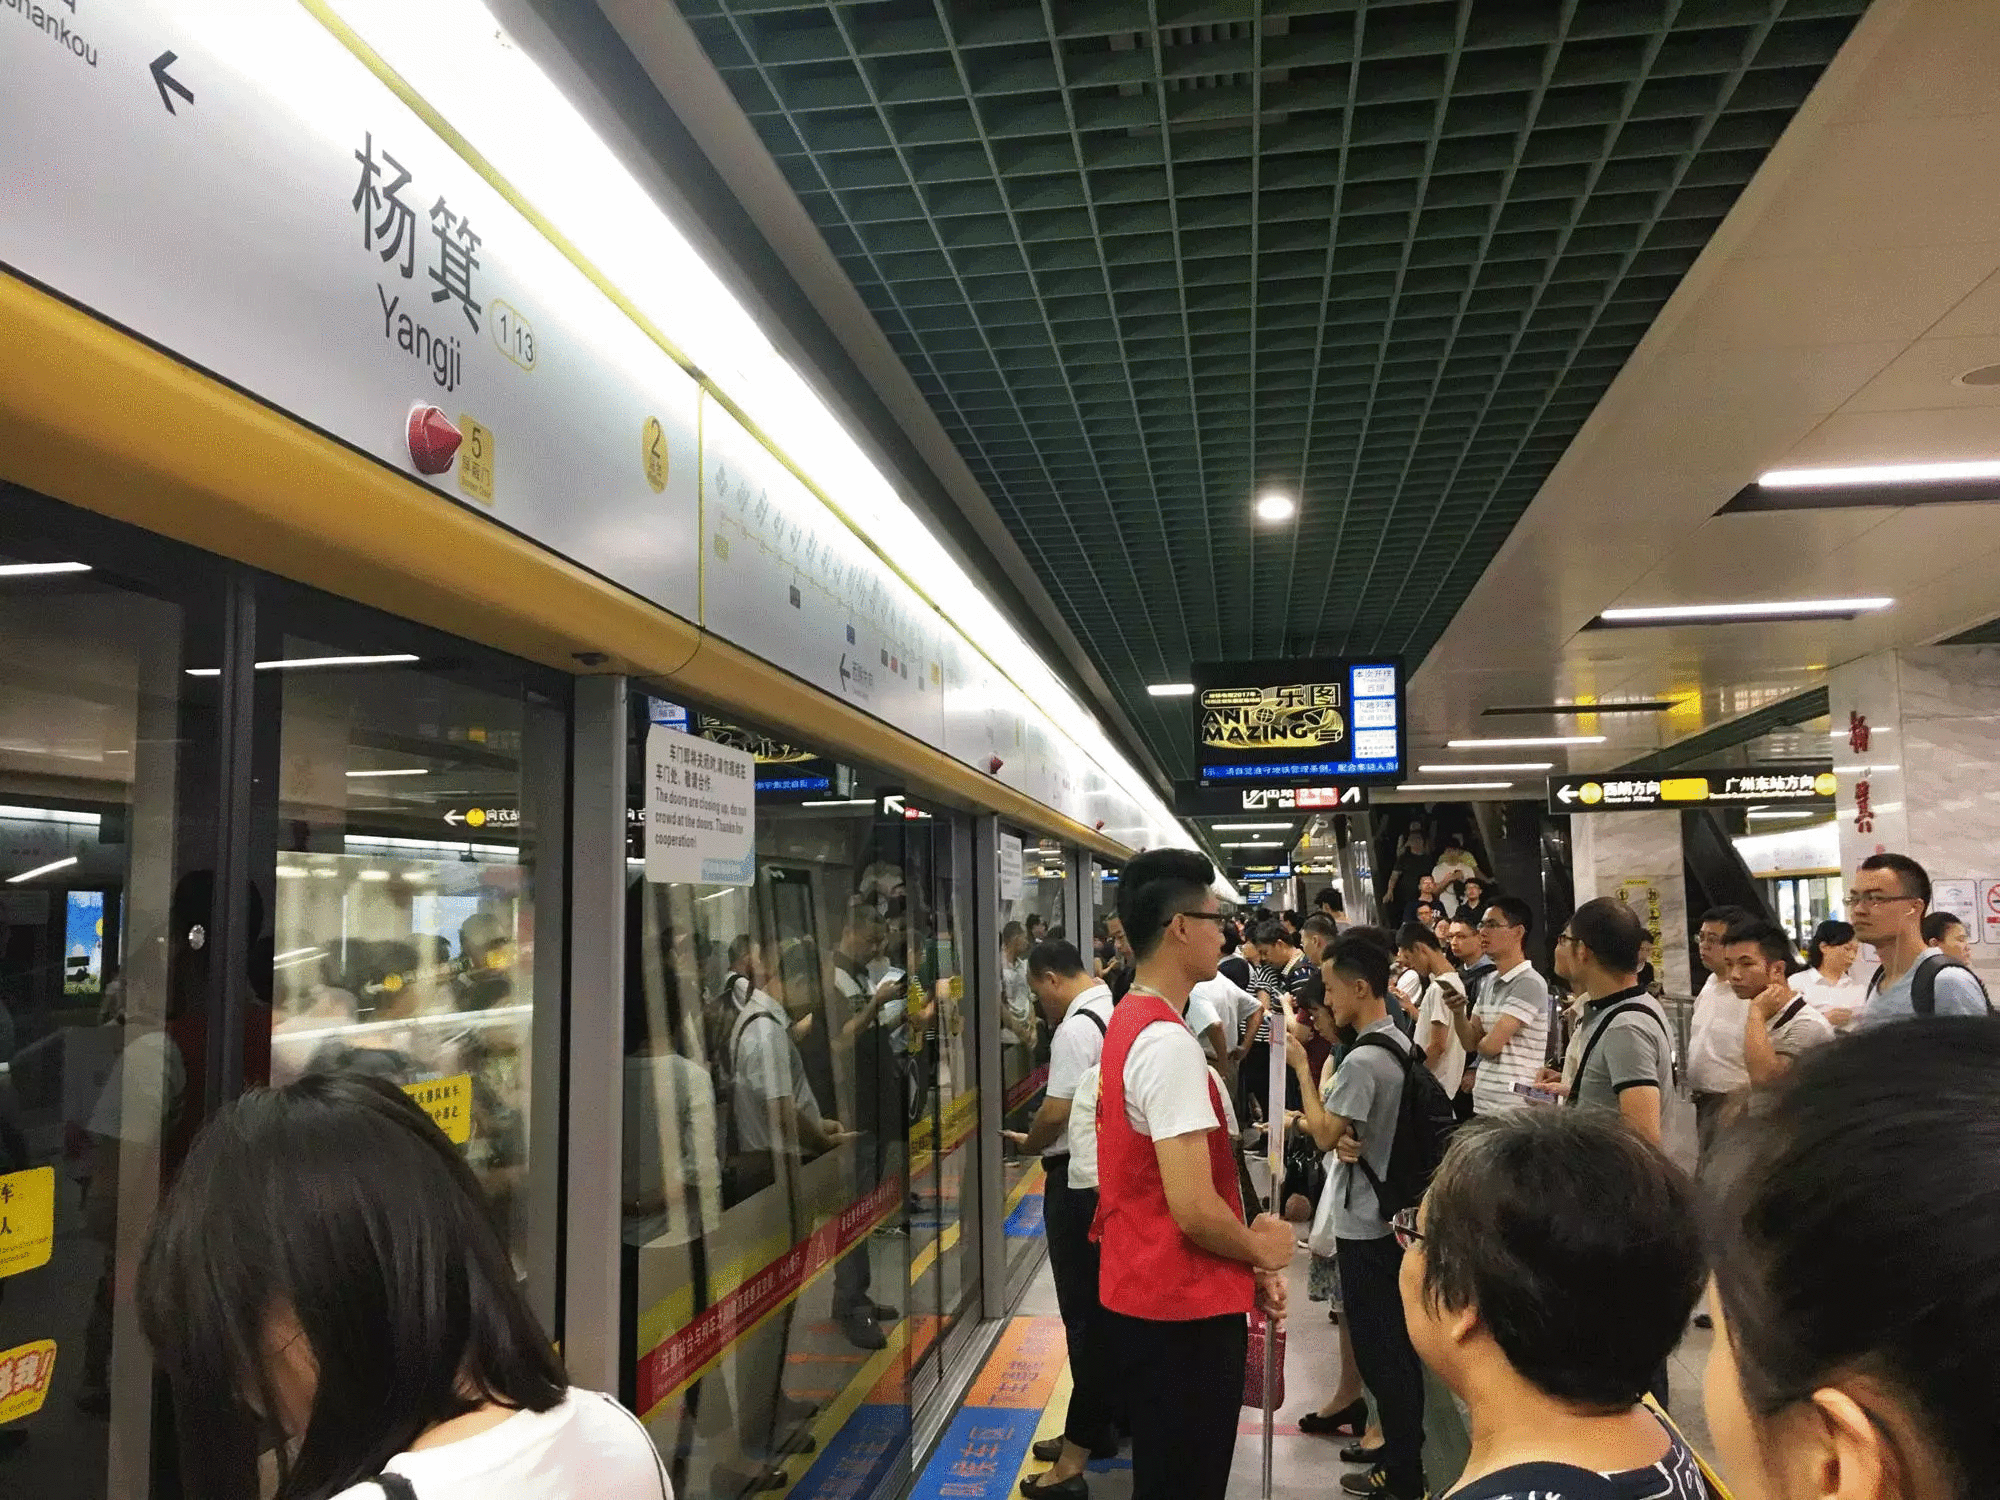 今天广州地铁"女性车厢"第一天试行!